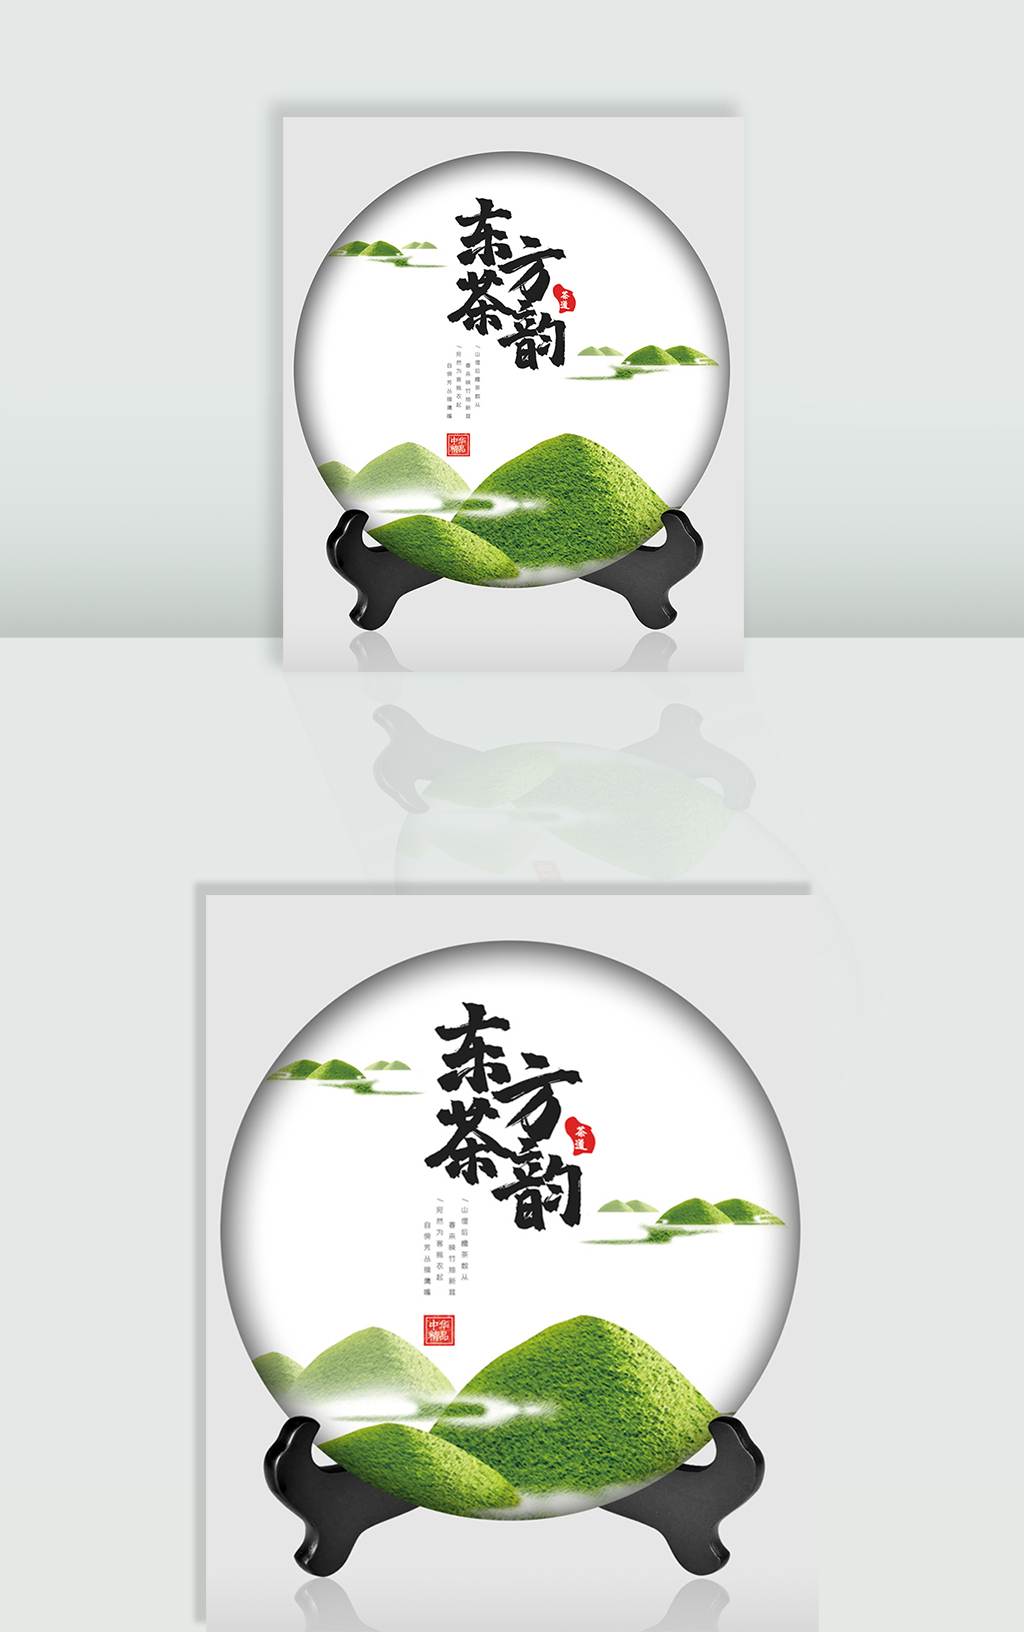 中国风茶叶茶饼包装设计